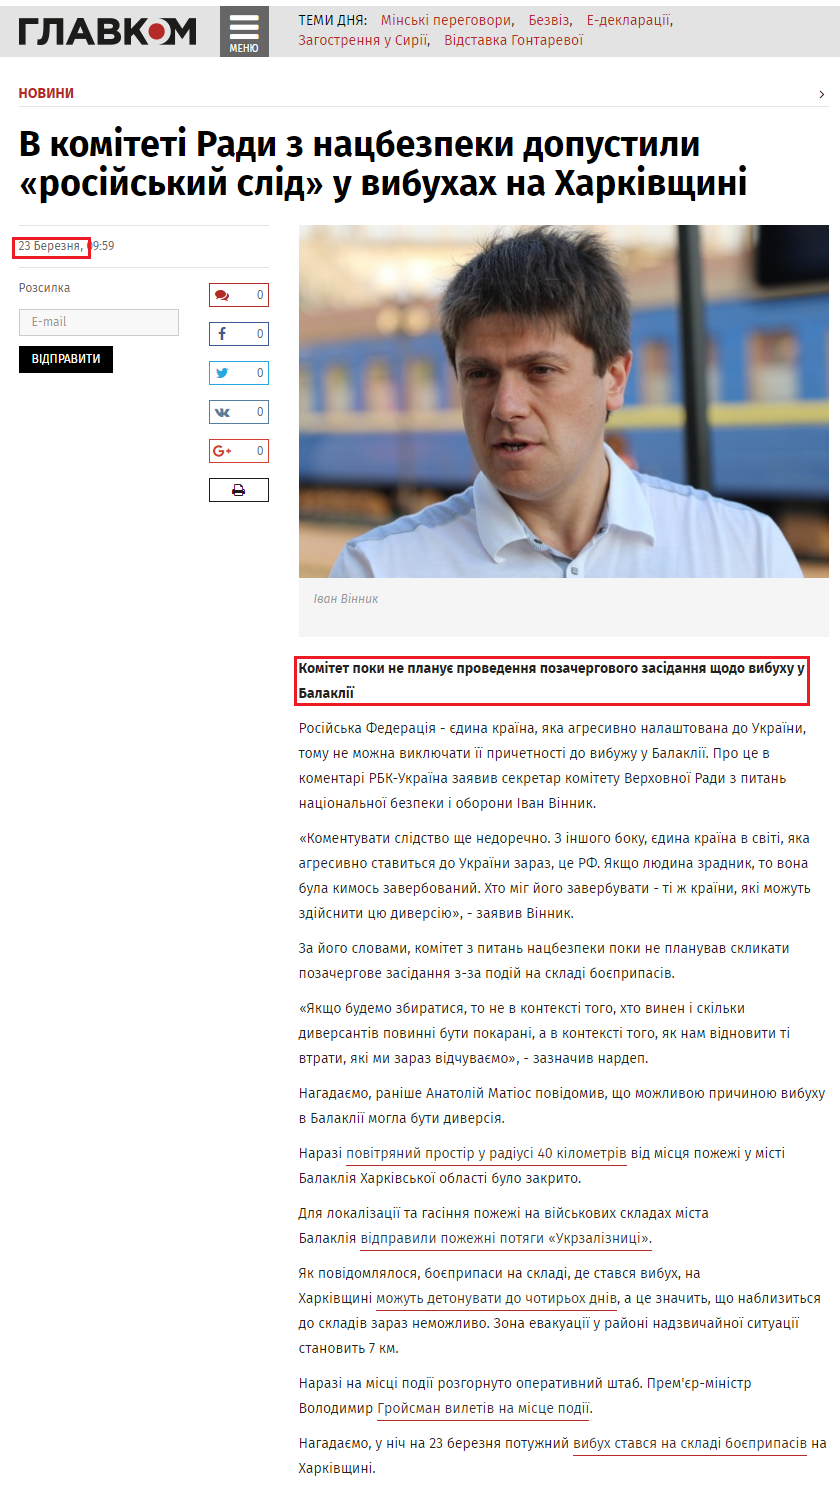 http://glavcom.ua/news/vibuh-u-balakliji-v-komiteti-radi-z-nacbezpeki-dopustili-rosiyskiy-slid-404923.html